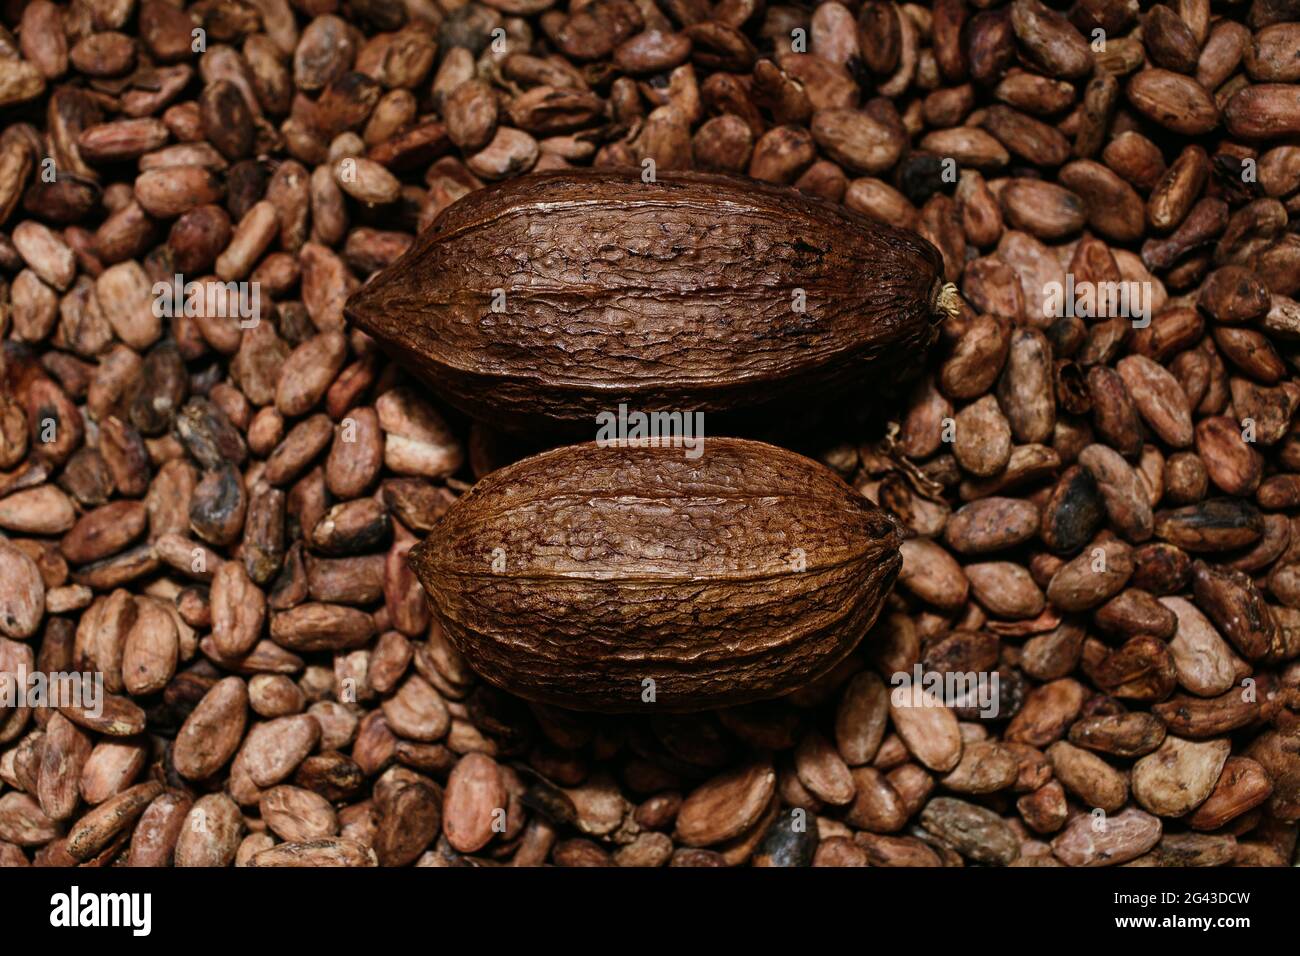 Fabrication artisanale de chocolat bio, fruits de coca et haricots, source de théobromine Banque D'Images